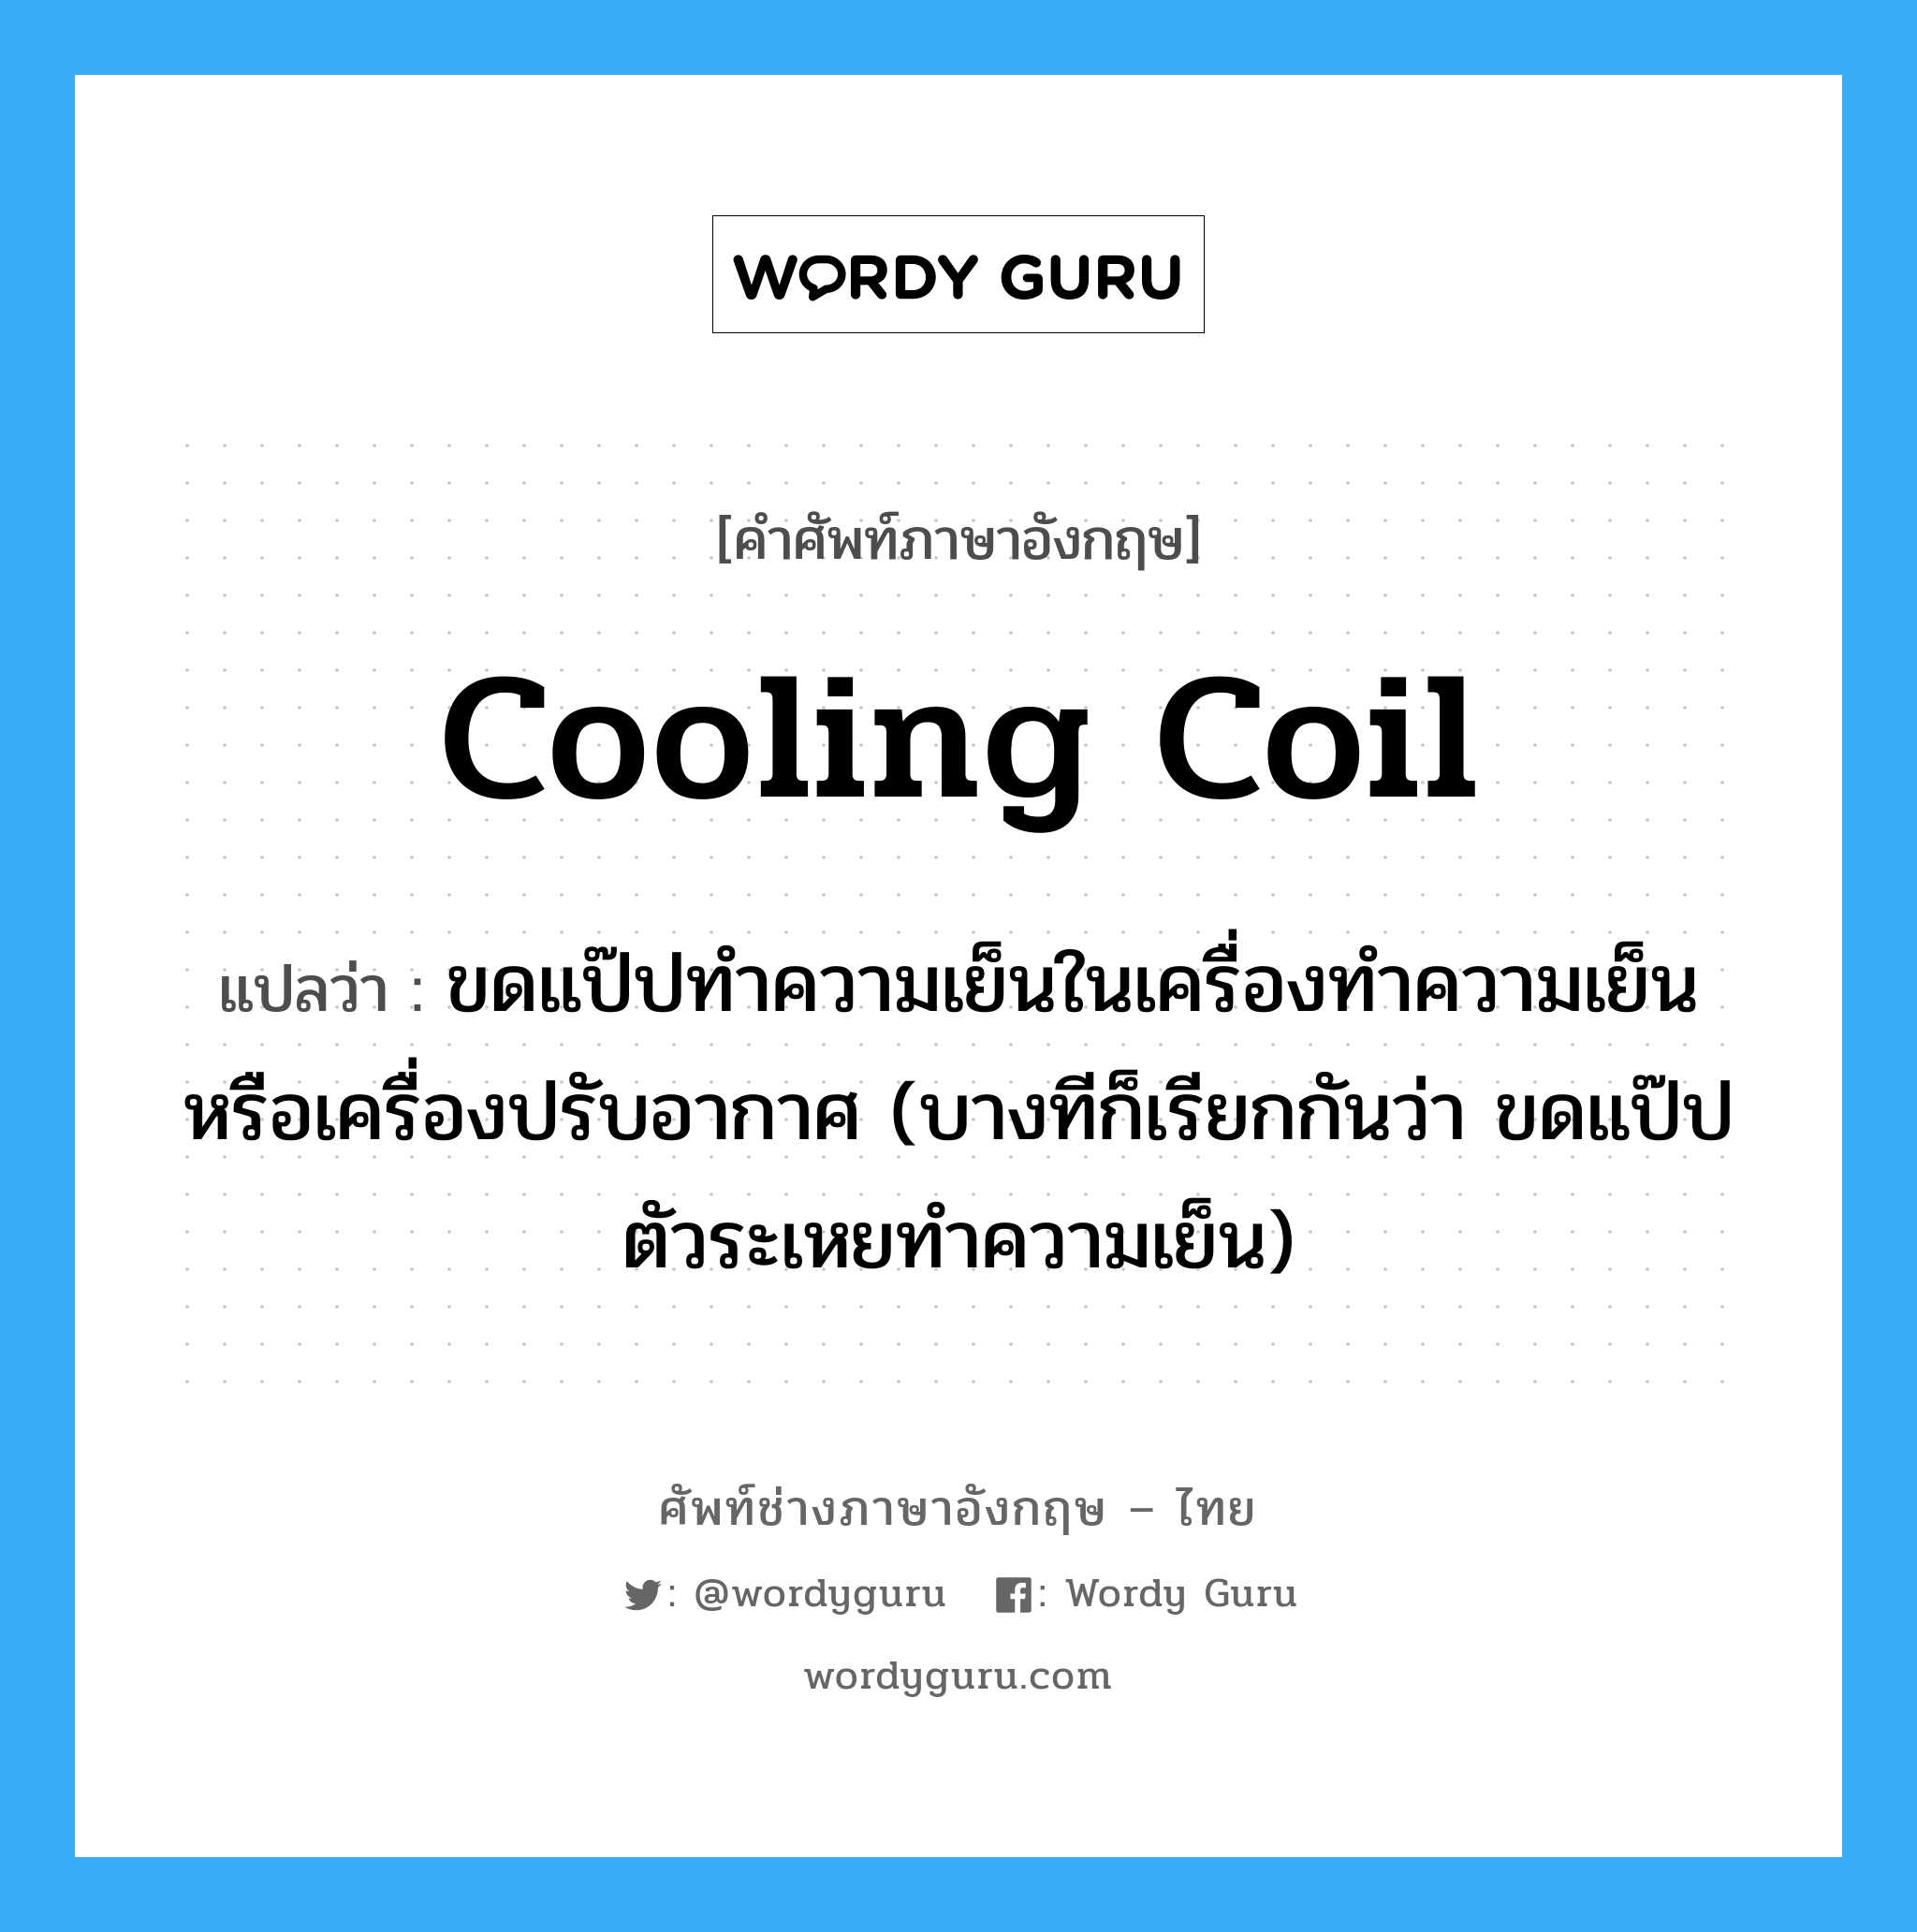 cooling coil แปลว่า?, คำศัพท์ช่างภาษาอังกฤษ - ไทย cooling coil คำศัพท์ภาษาอังกฤษ cooling coil แปลว่า ขดแป๊ปทำความเย็นในเครื่องทำความเย็น หรือเครื่องปรับอากาศ (บางทีก็เรียกกันว่า ขดแป๊ปตัวระเหยทำความเย็น)